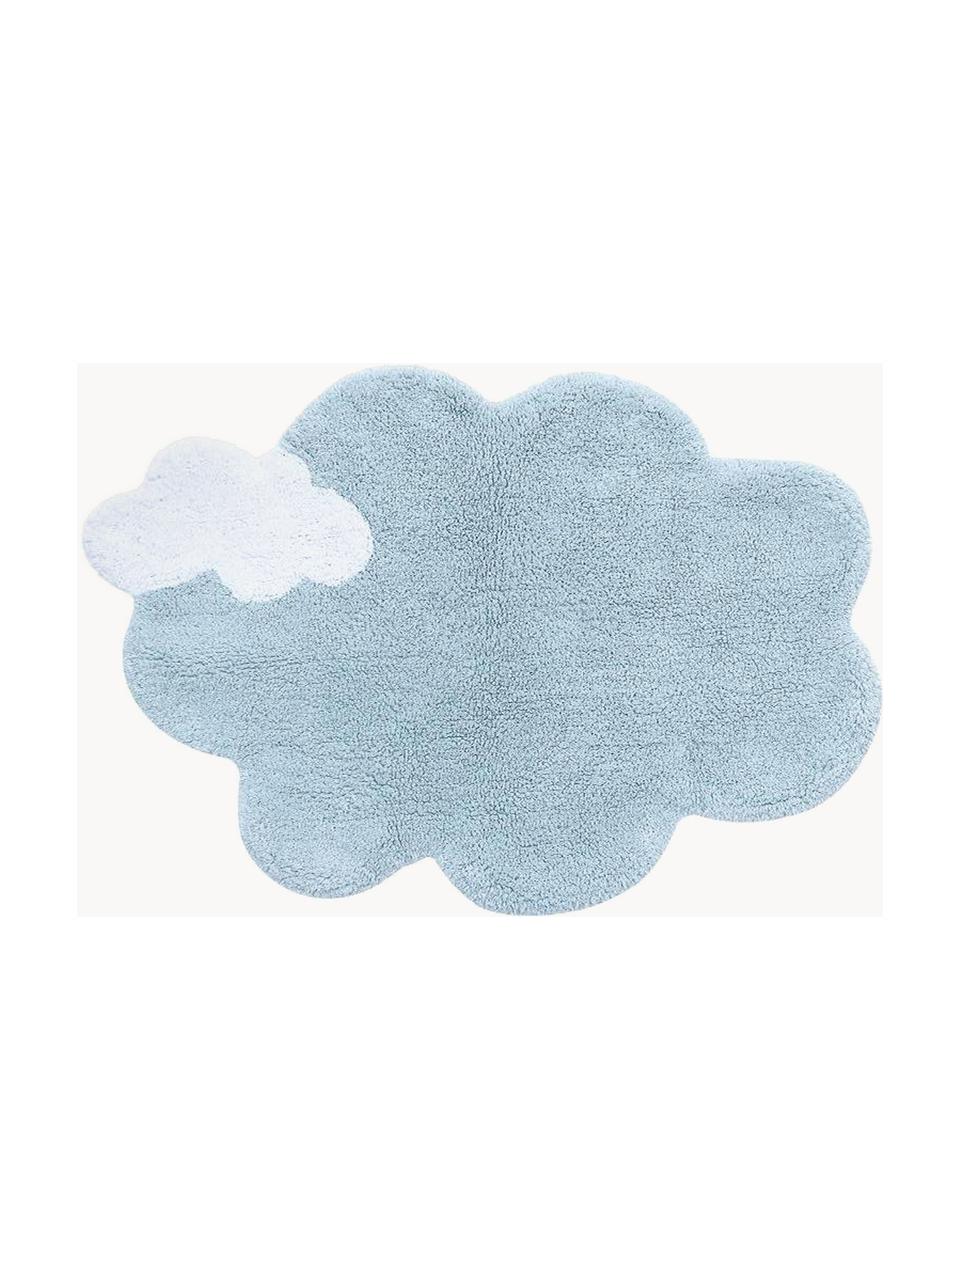 Tapis pour enfant tissé à la main Dream, Bleu clair, blanc, larg. 70 x long. 100 cm (taille XS)